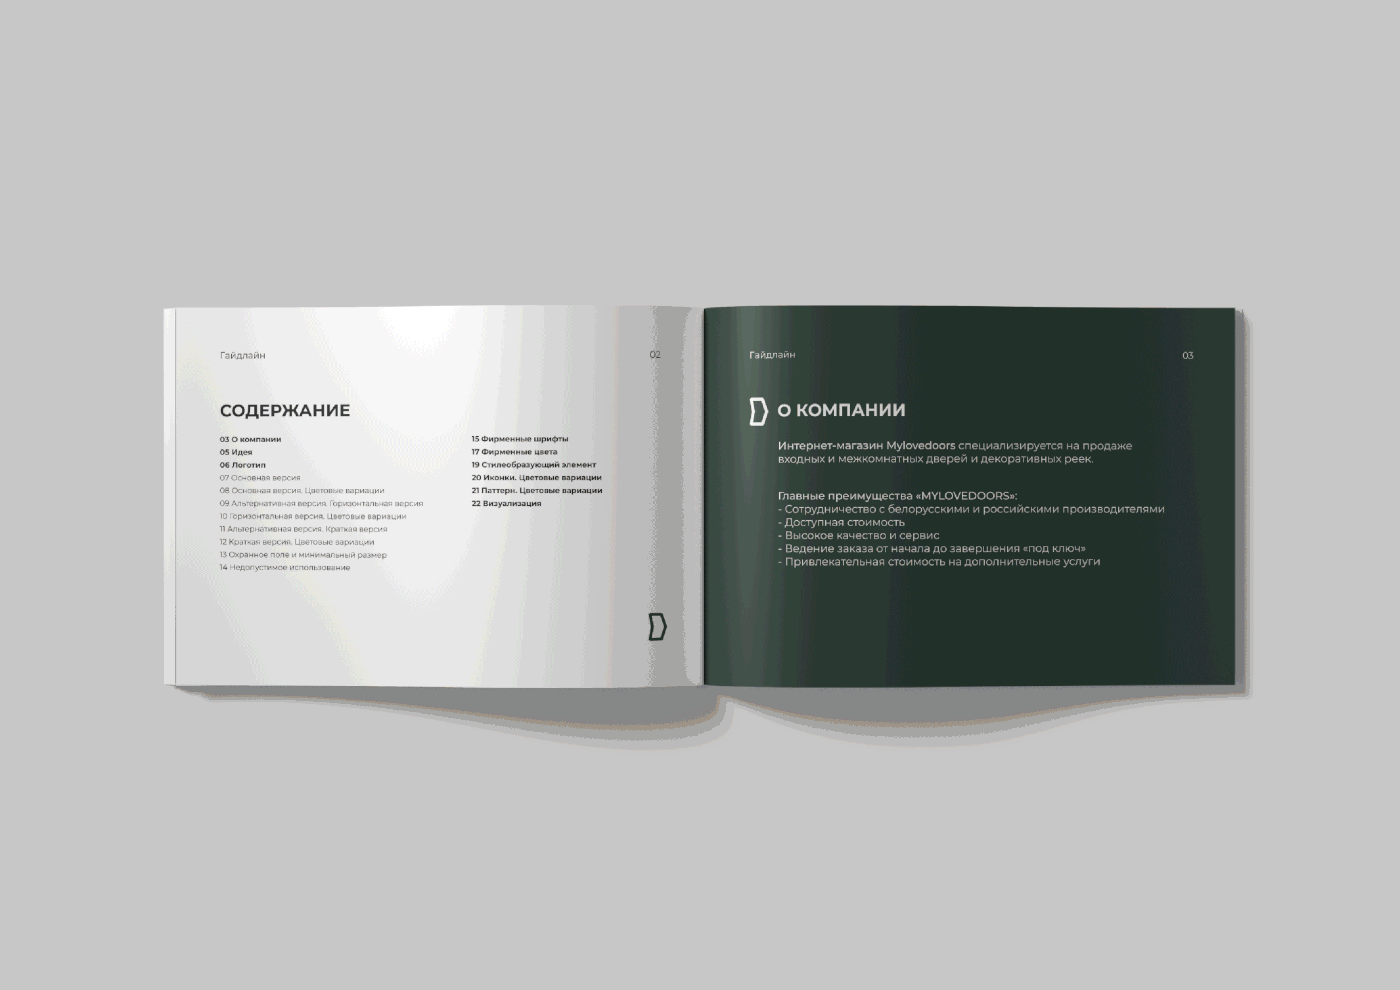 guidelines brandbook Logotipo айдентика брендинг полиграфия графический дизайн Двери строительство брендбук